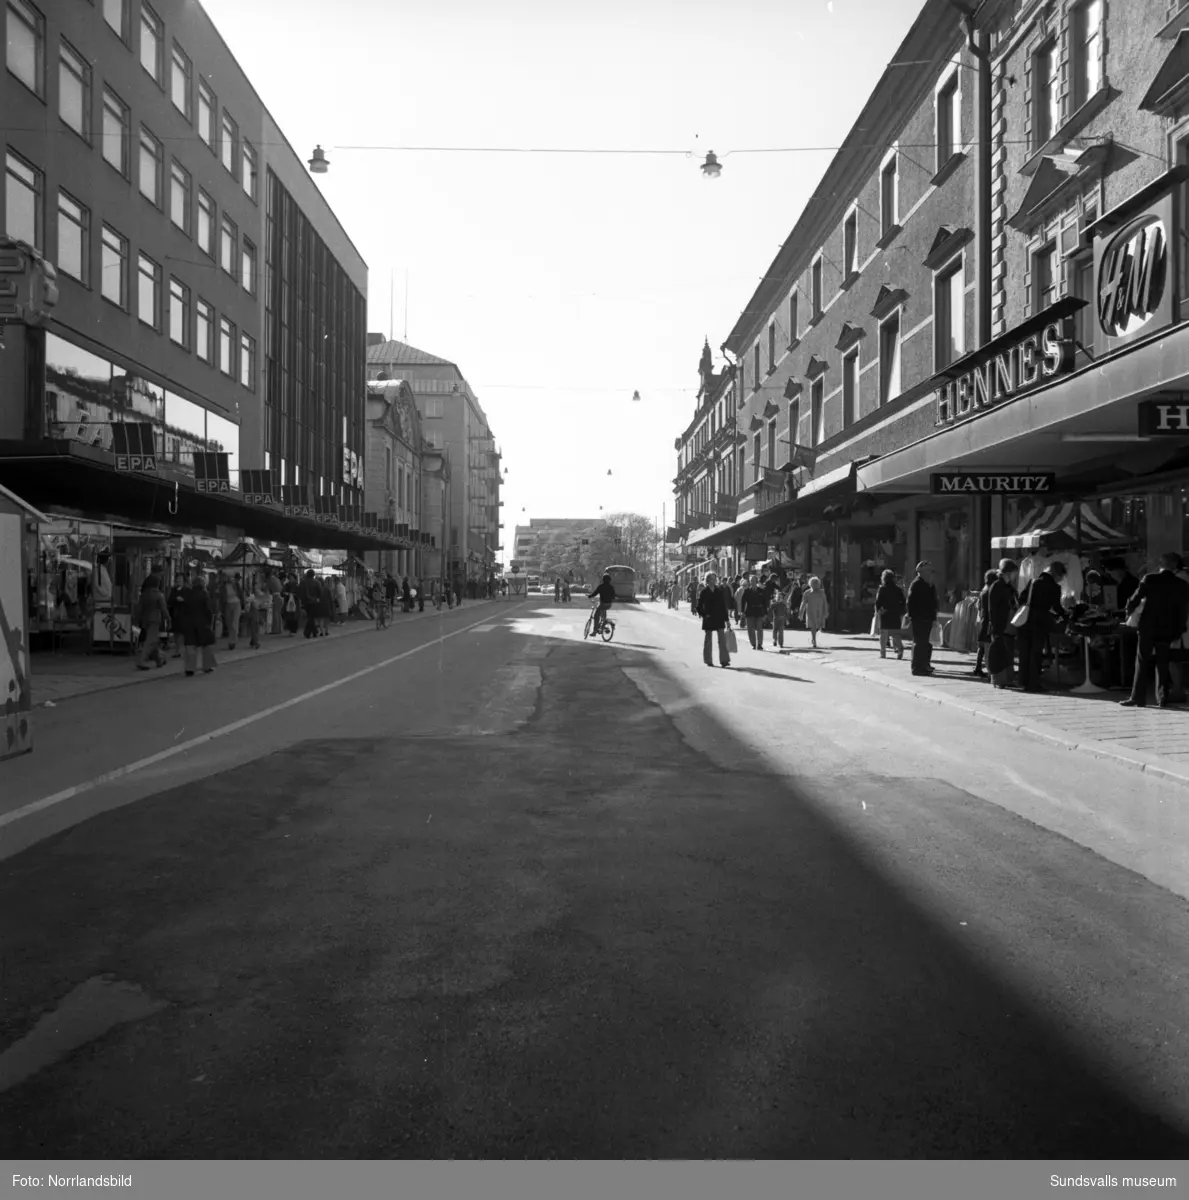 Bilder från Storgatan vid varuhuset EPA på vänster sida och mittemot låg Dahlmans samt HM.